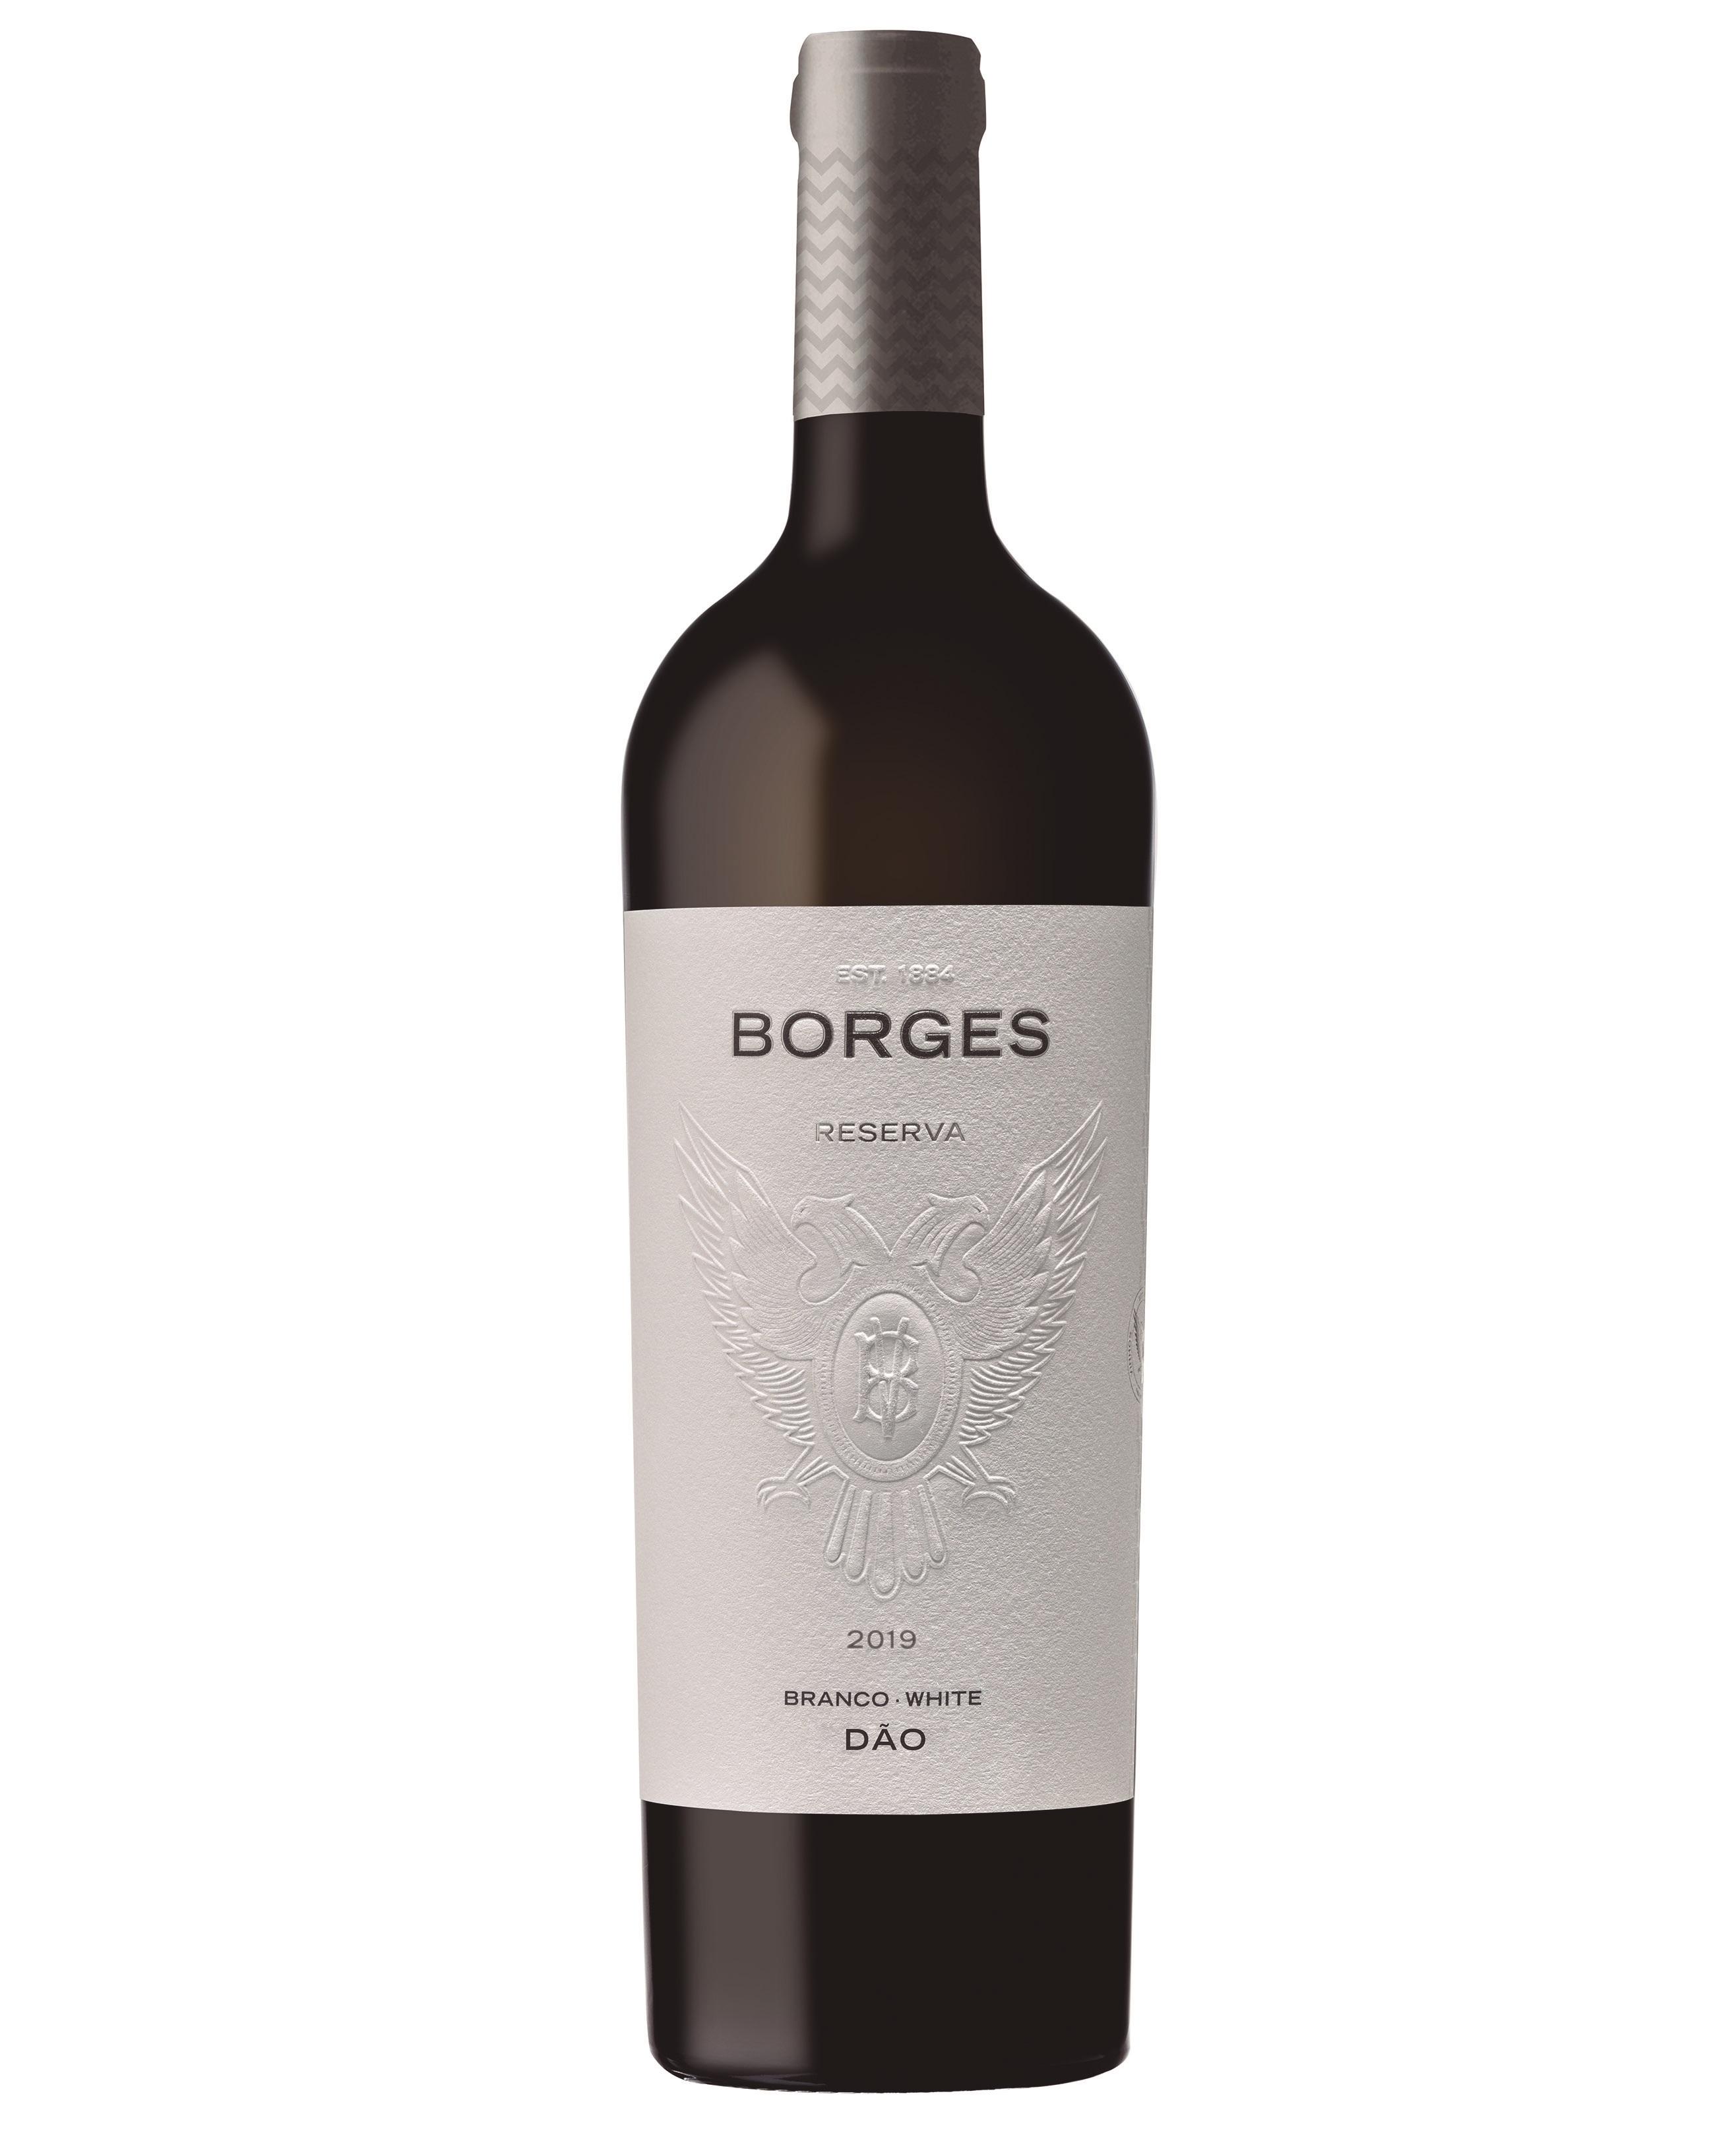 Borges Reserva Dão 2019 (20,67€ / Litro)